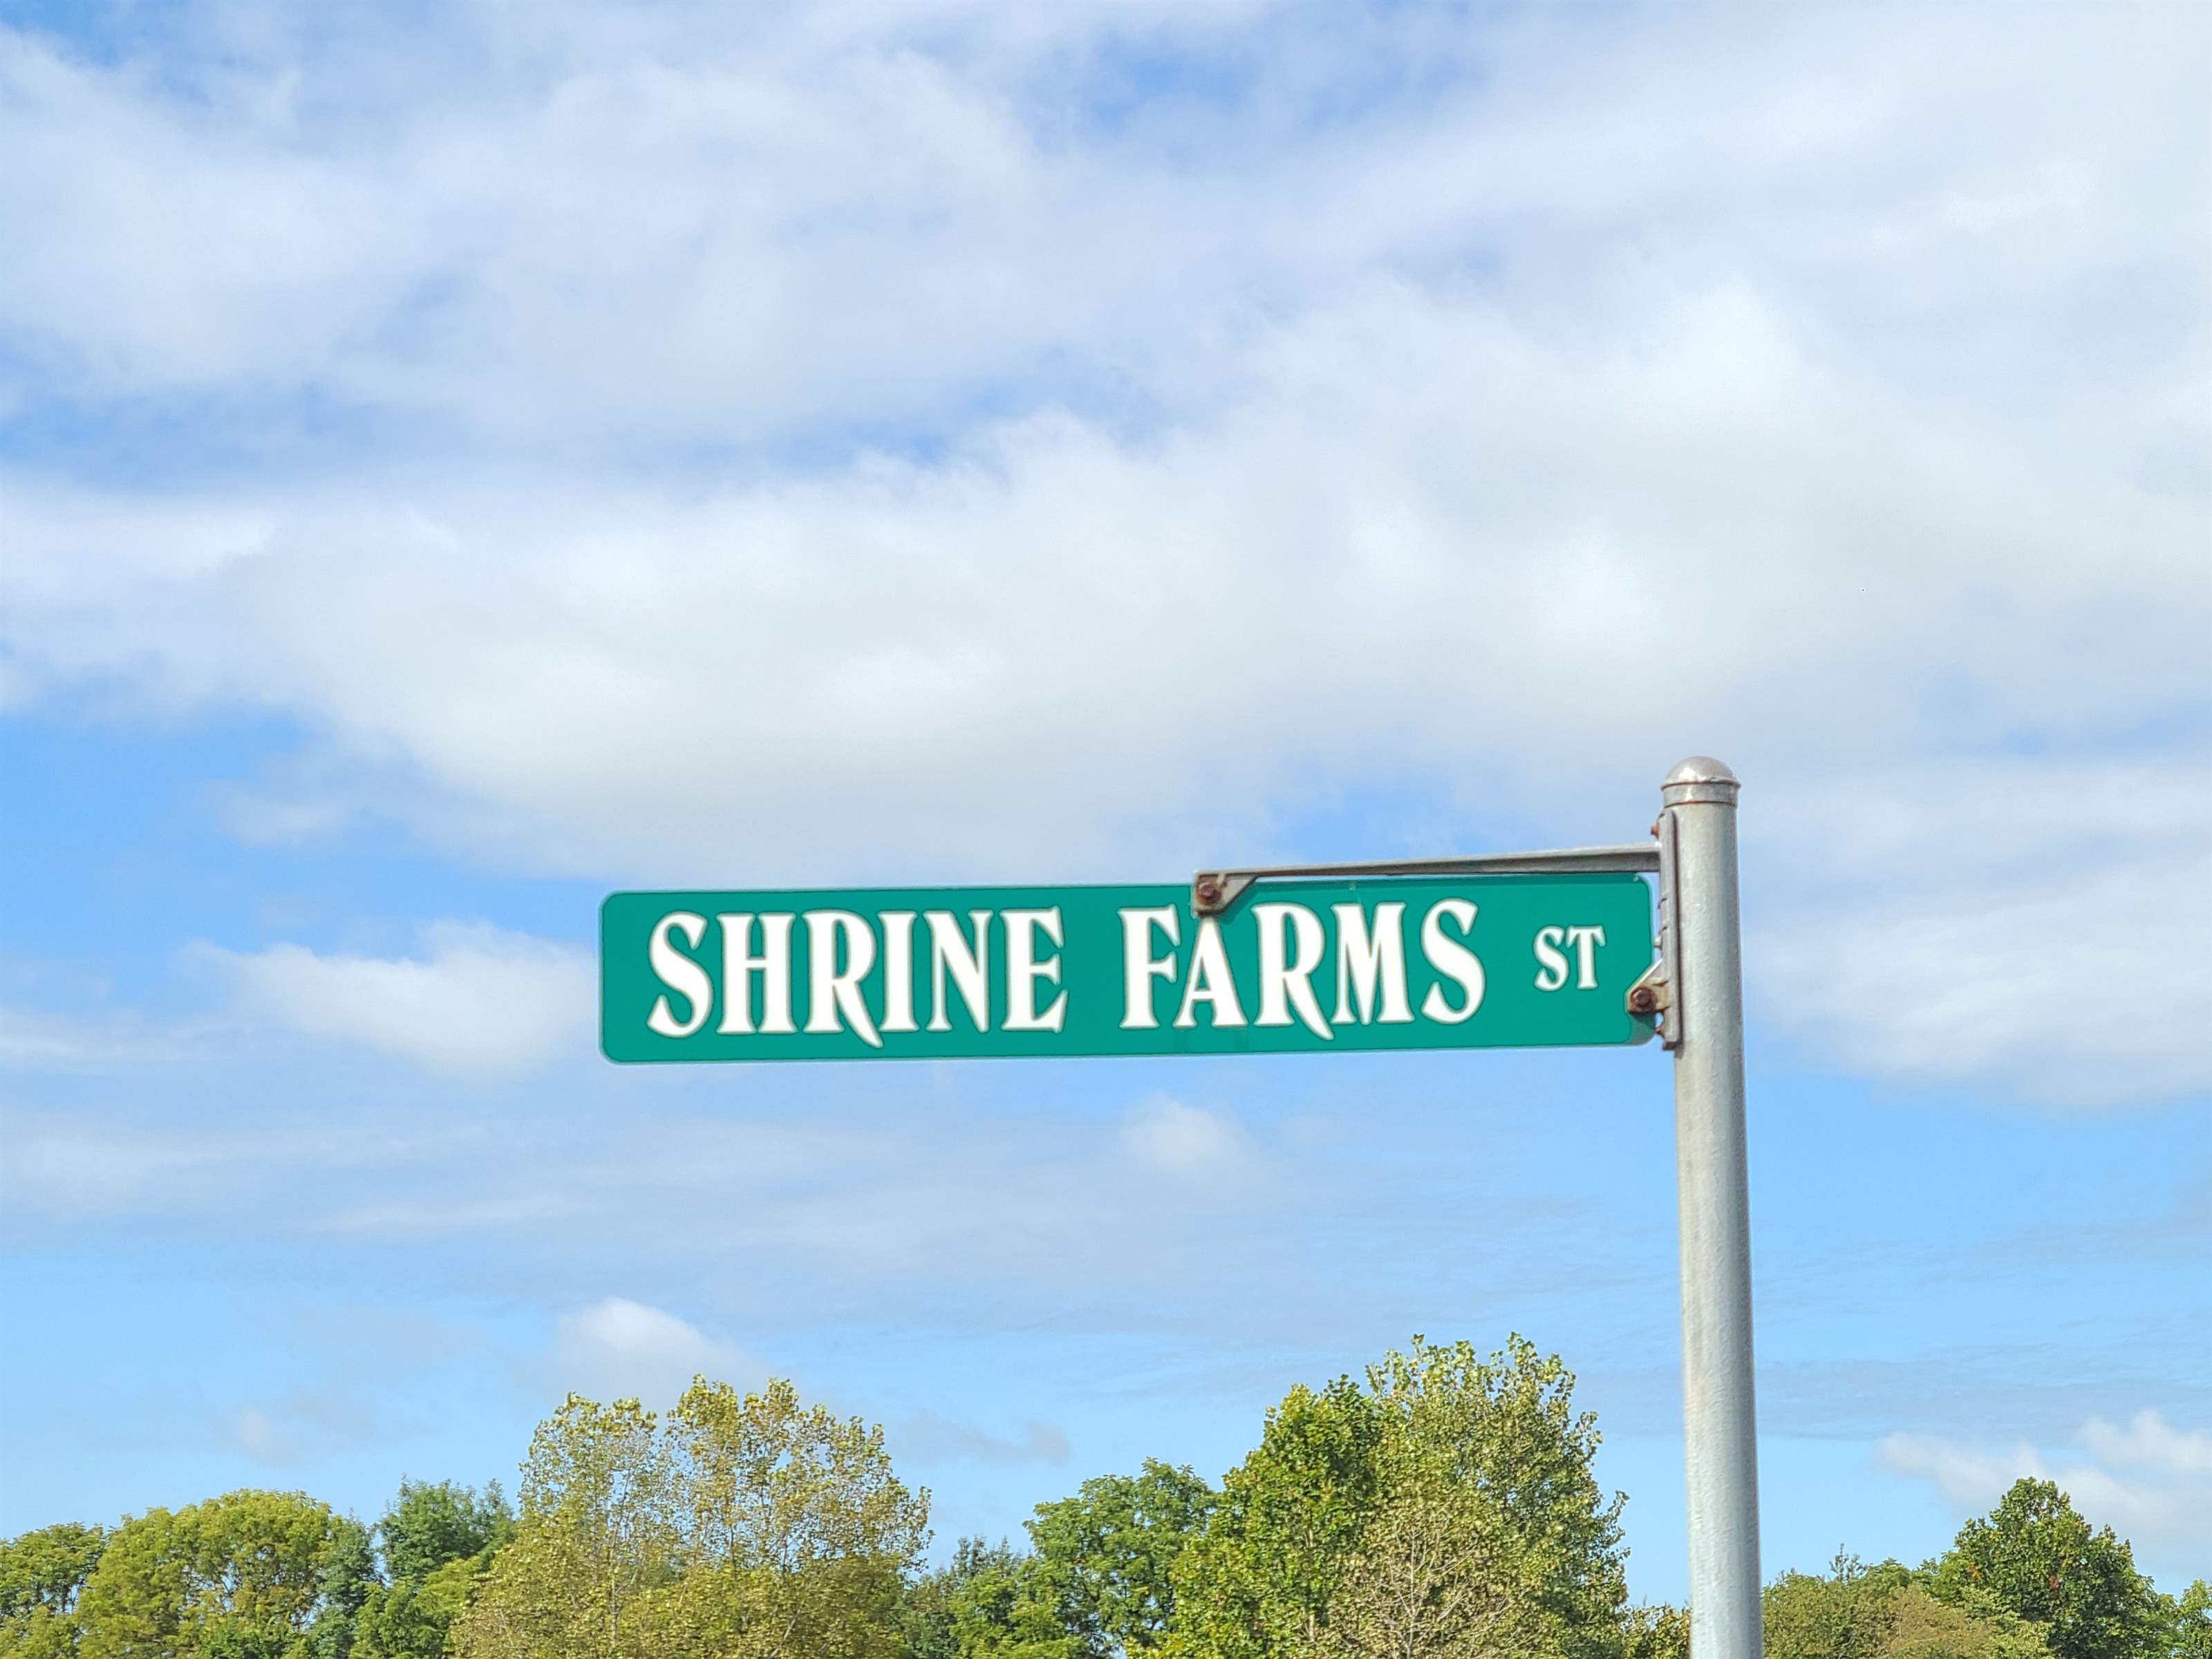 3930 North Shrine Farms, Terre Haute, IN 47805